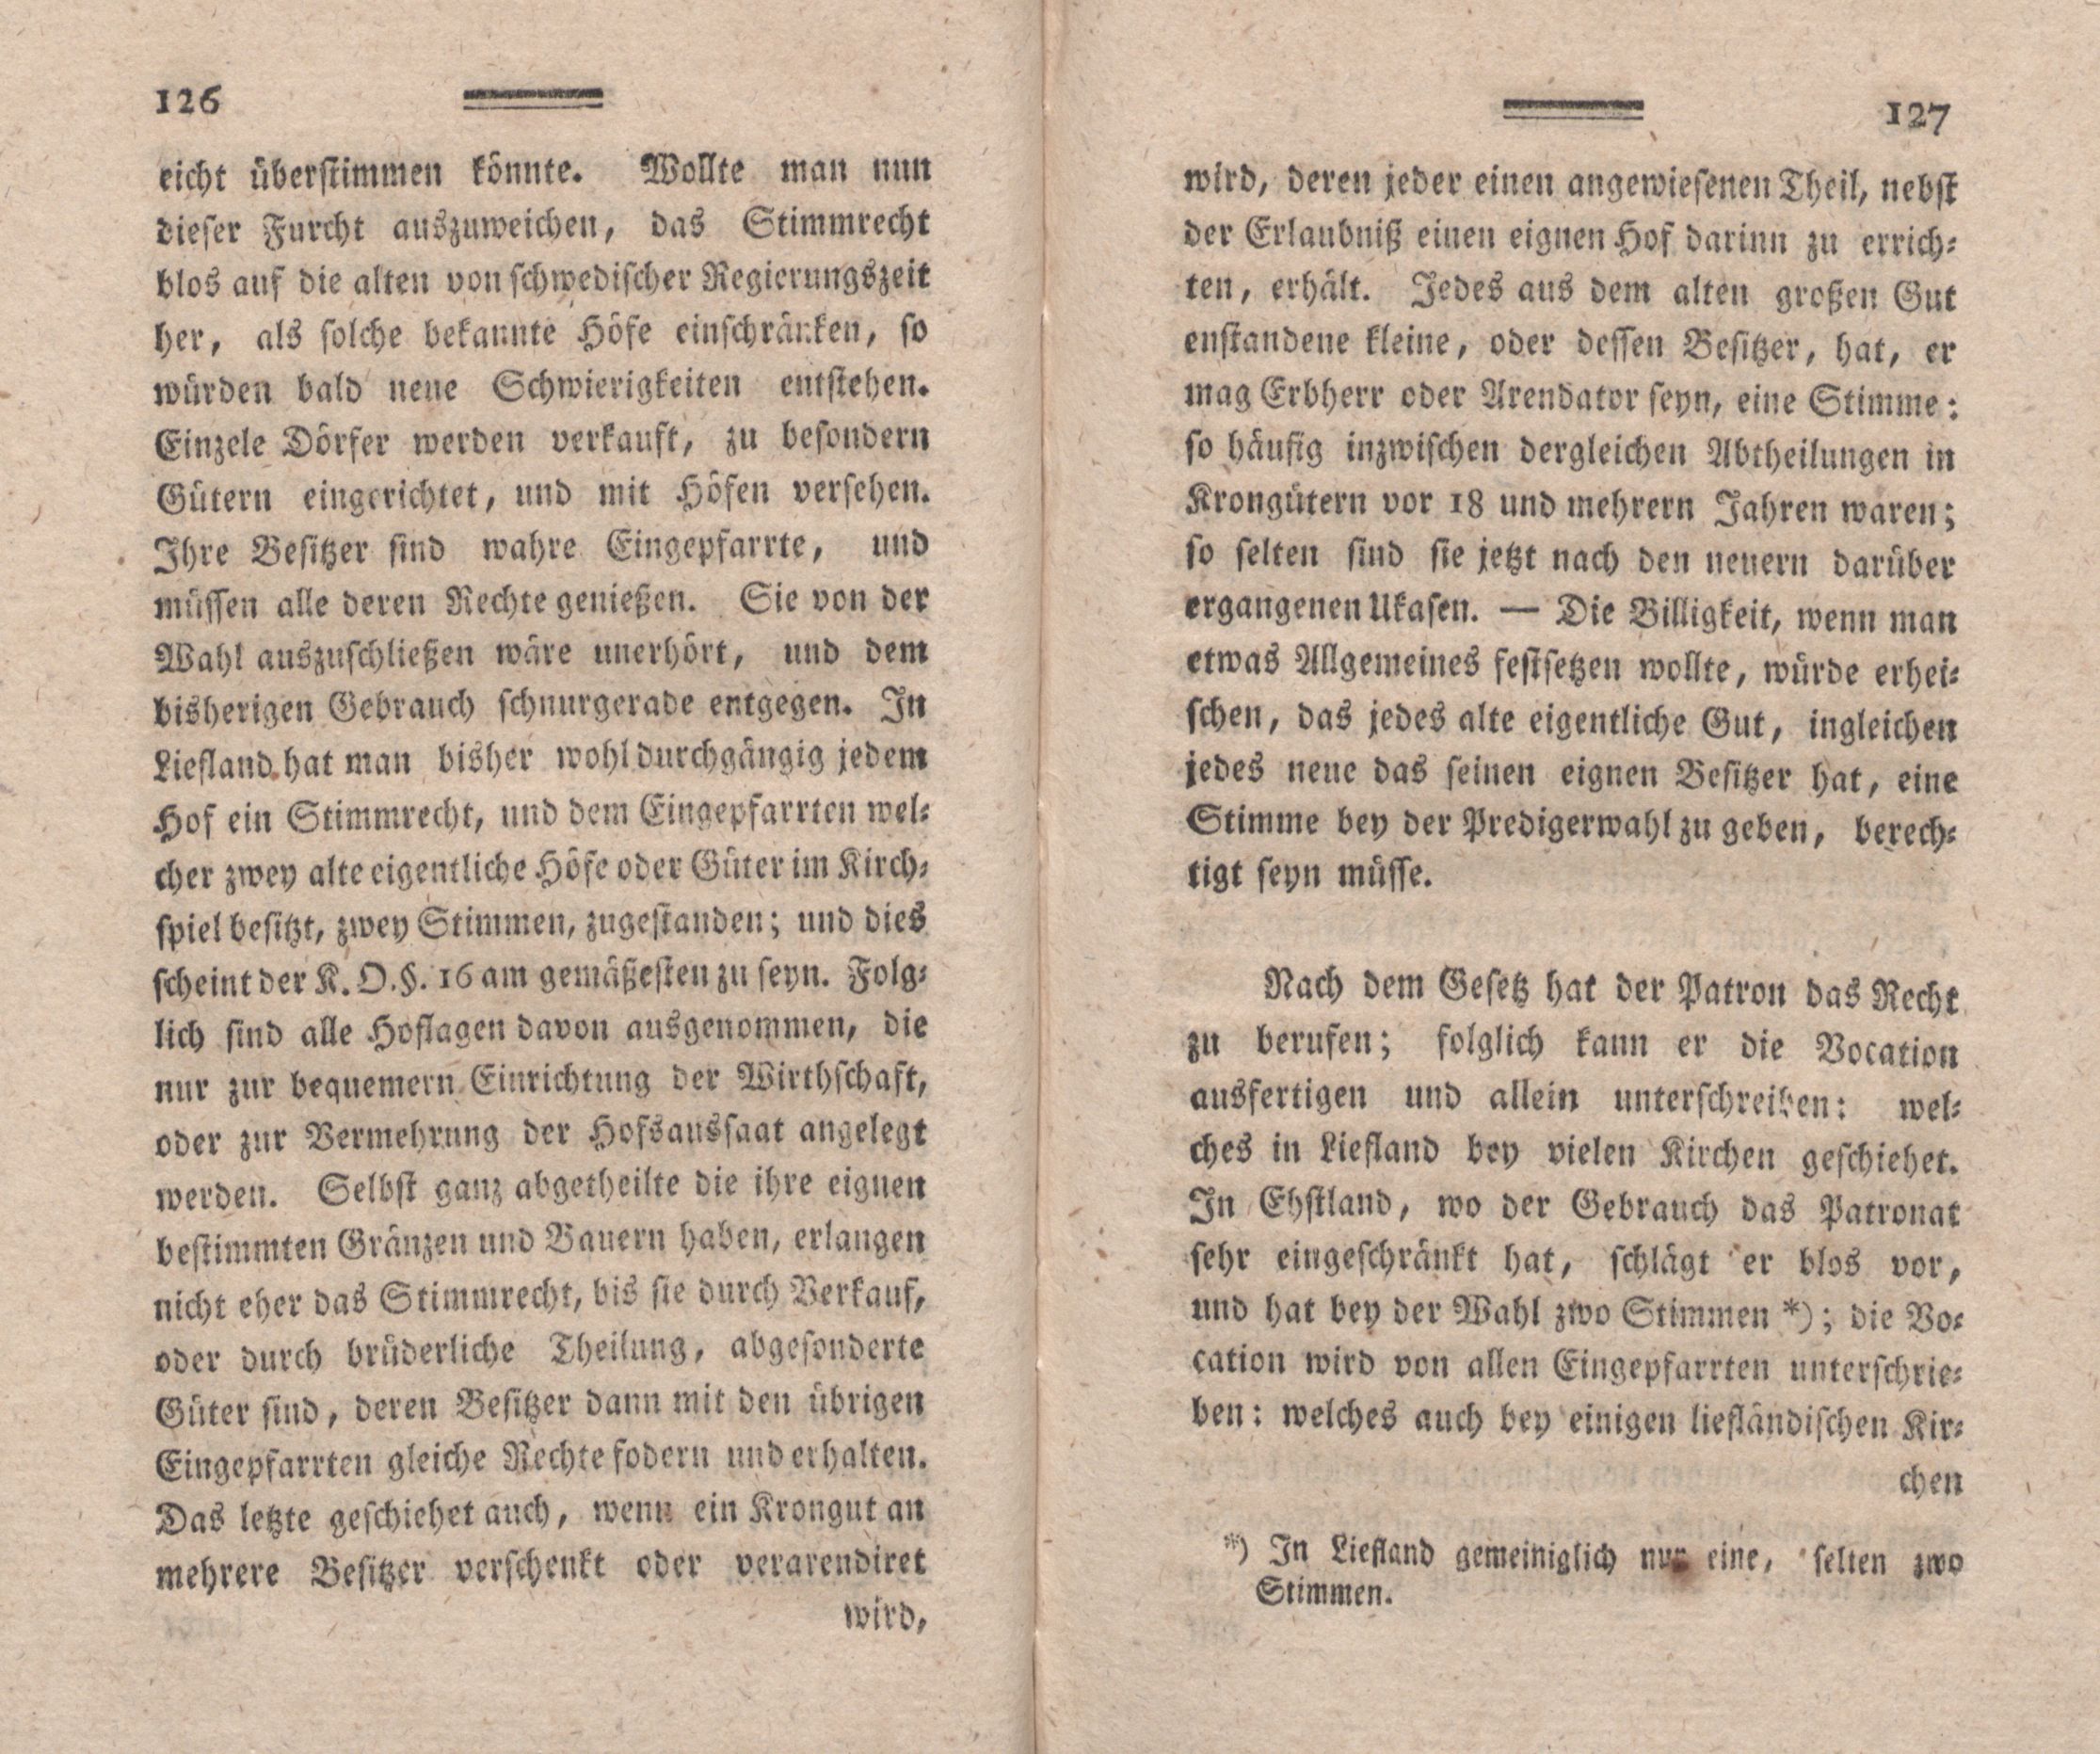 Nordische Miscellaneen [02] (1781) | 64. (126-127) Main body of text